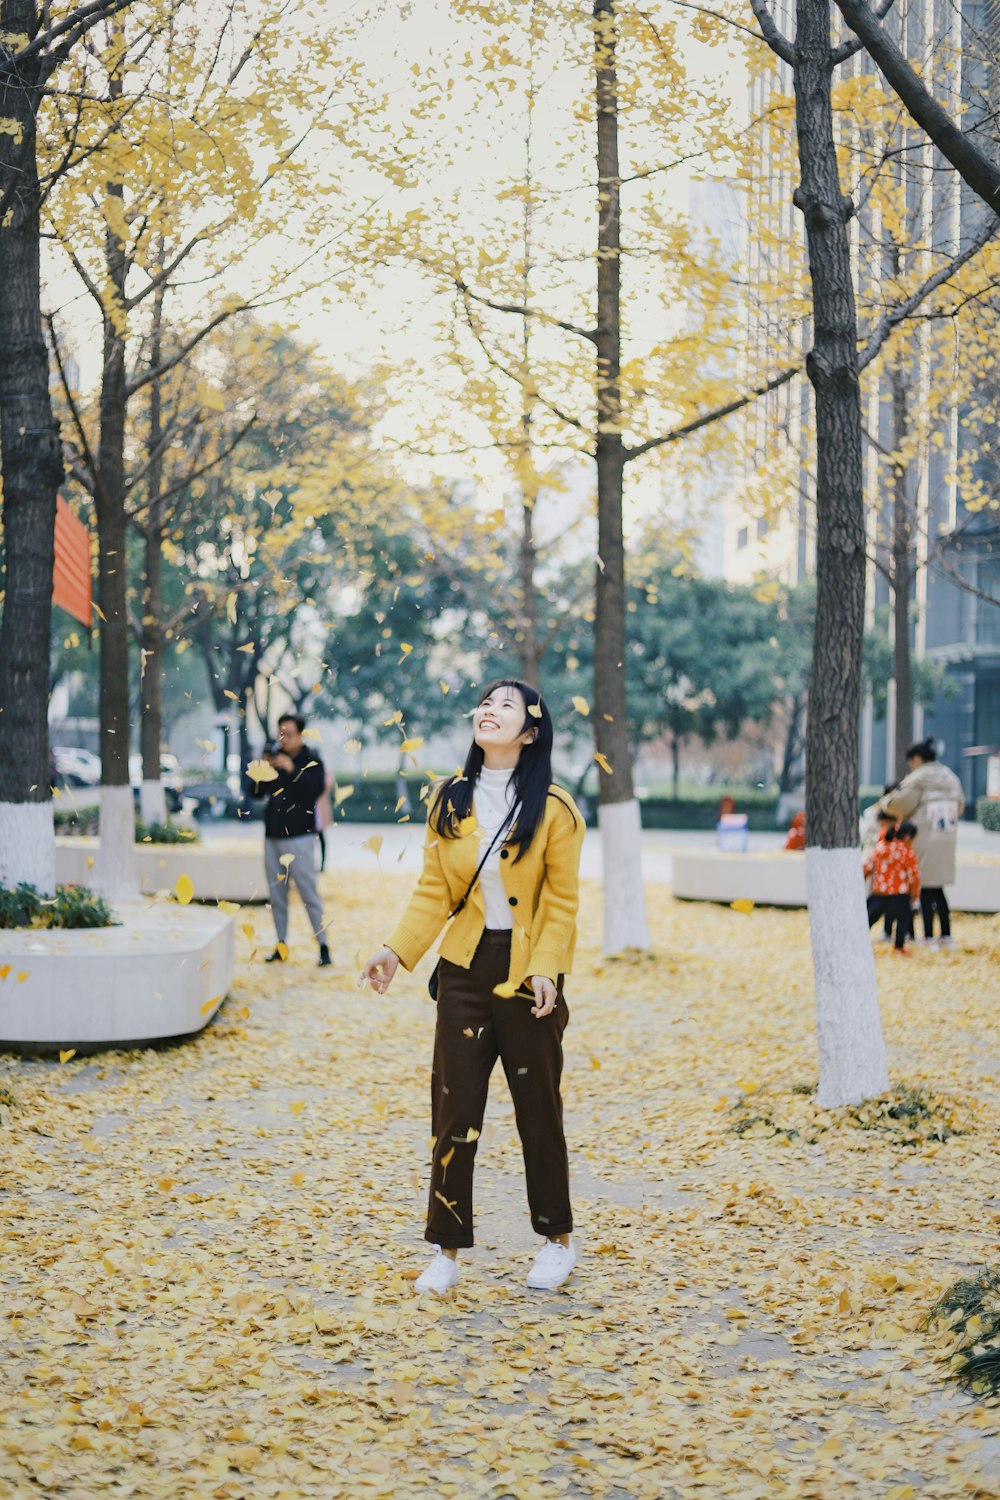 Frau in der Nähe von Bäumen mit fallenden Blättern